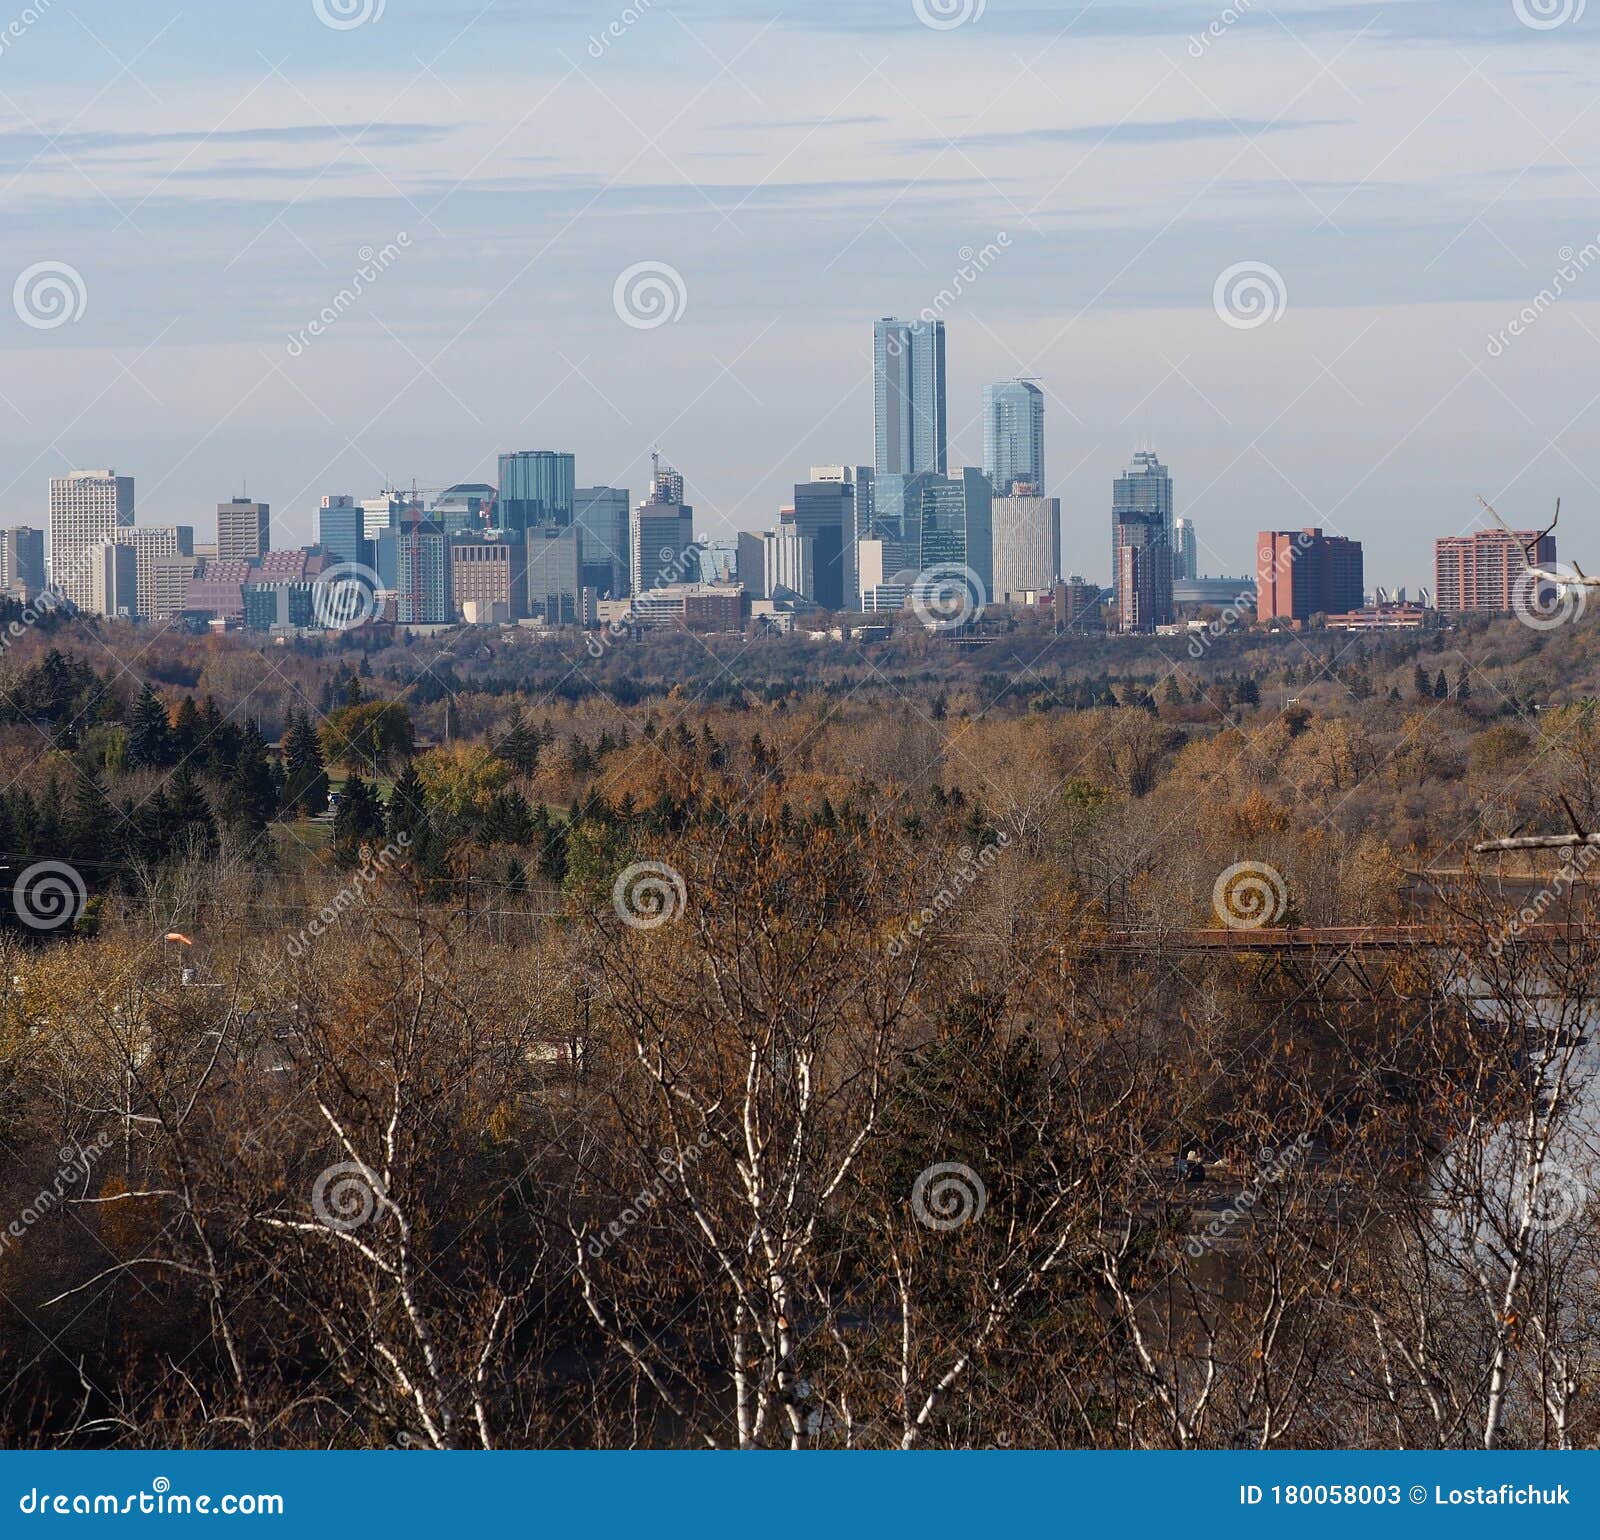 Edmonton Alberta Skyline O Cityscape. Paesaggio urbano o skyline di edifici moderni nel centro di Edmonton Alberta contro il cielo azzurro con nuvole leggere e un parco in primo piano